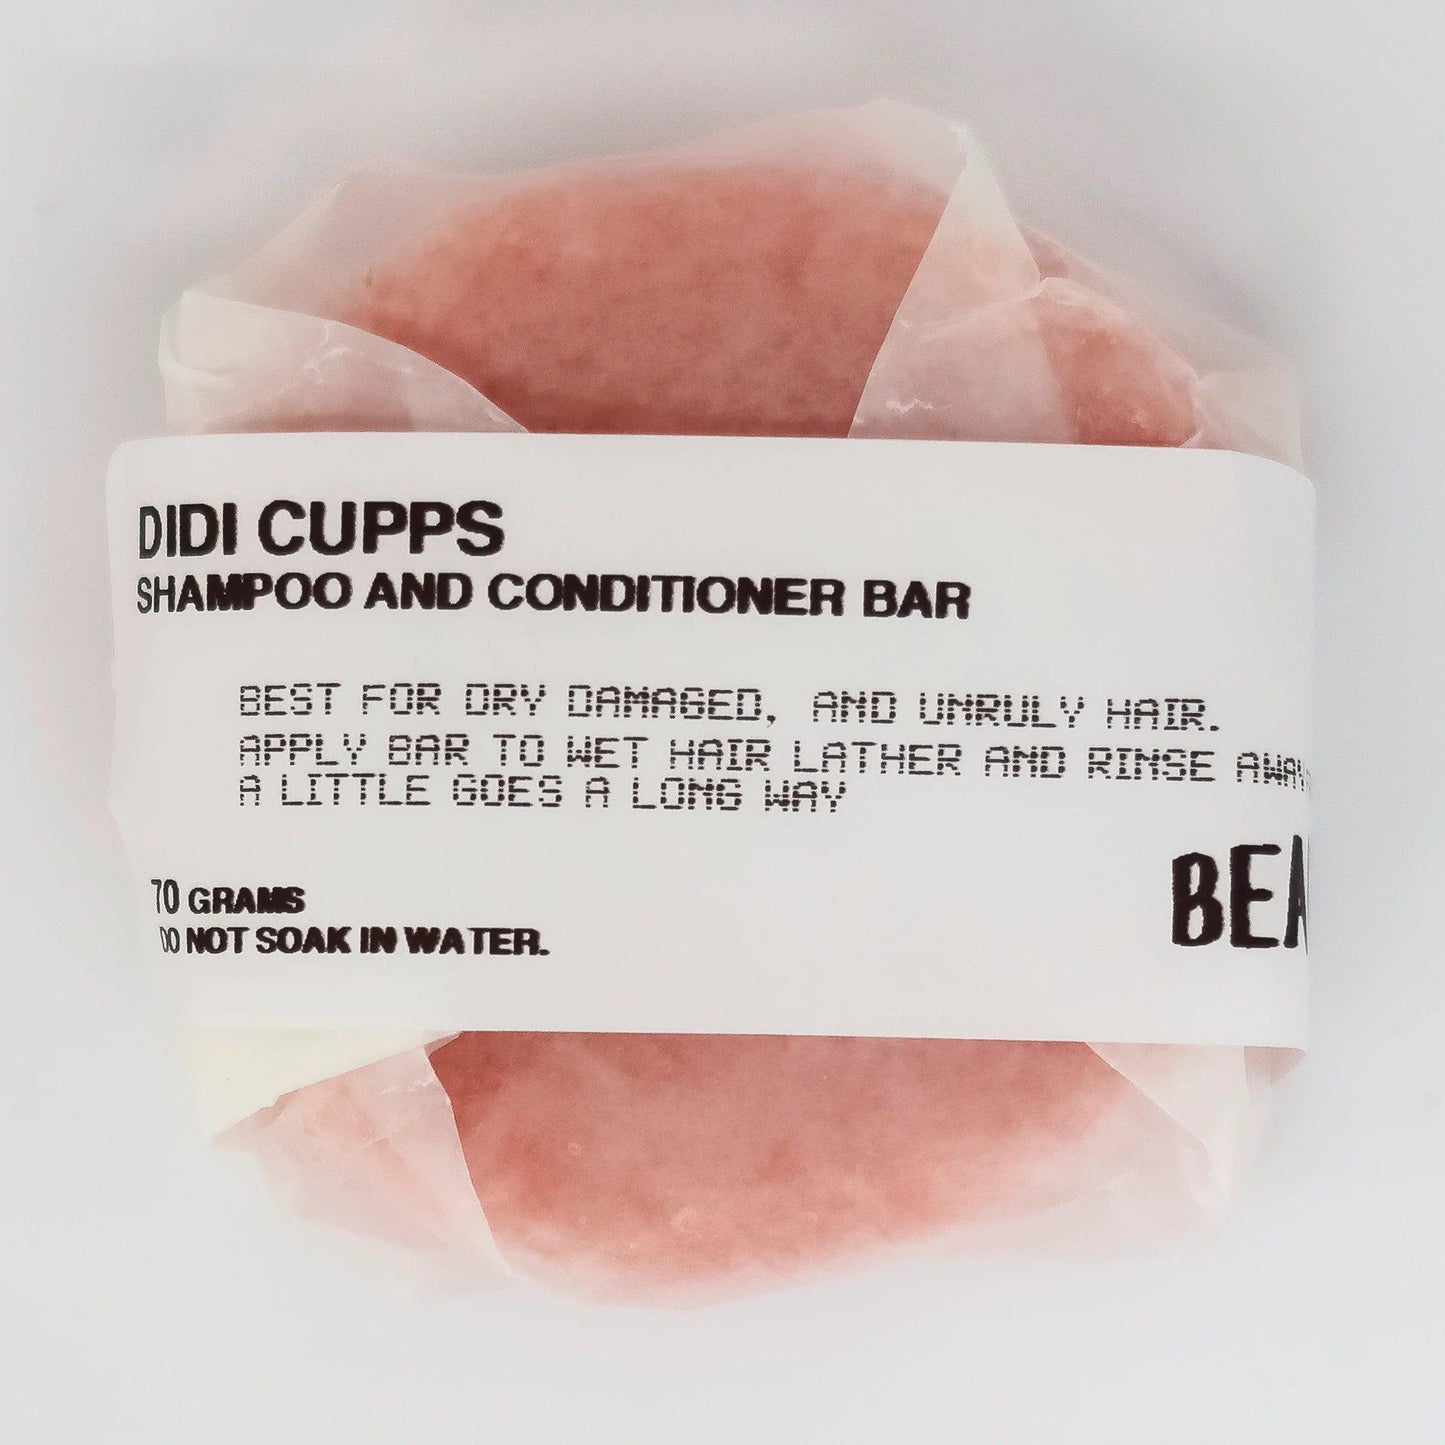 Didi Cupps 2 in 1 Shampoo Bar - Simula PH